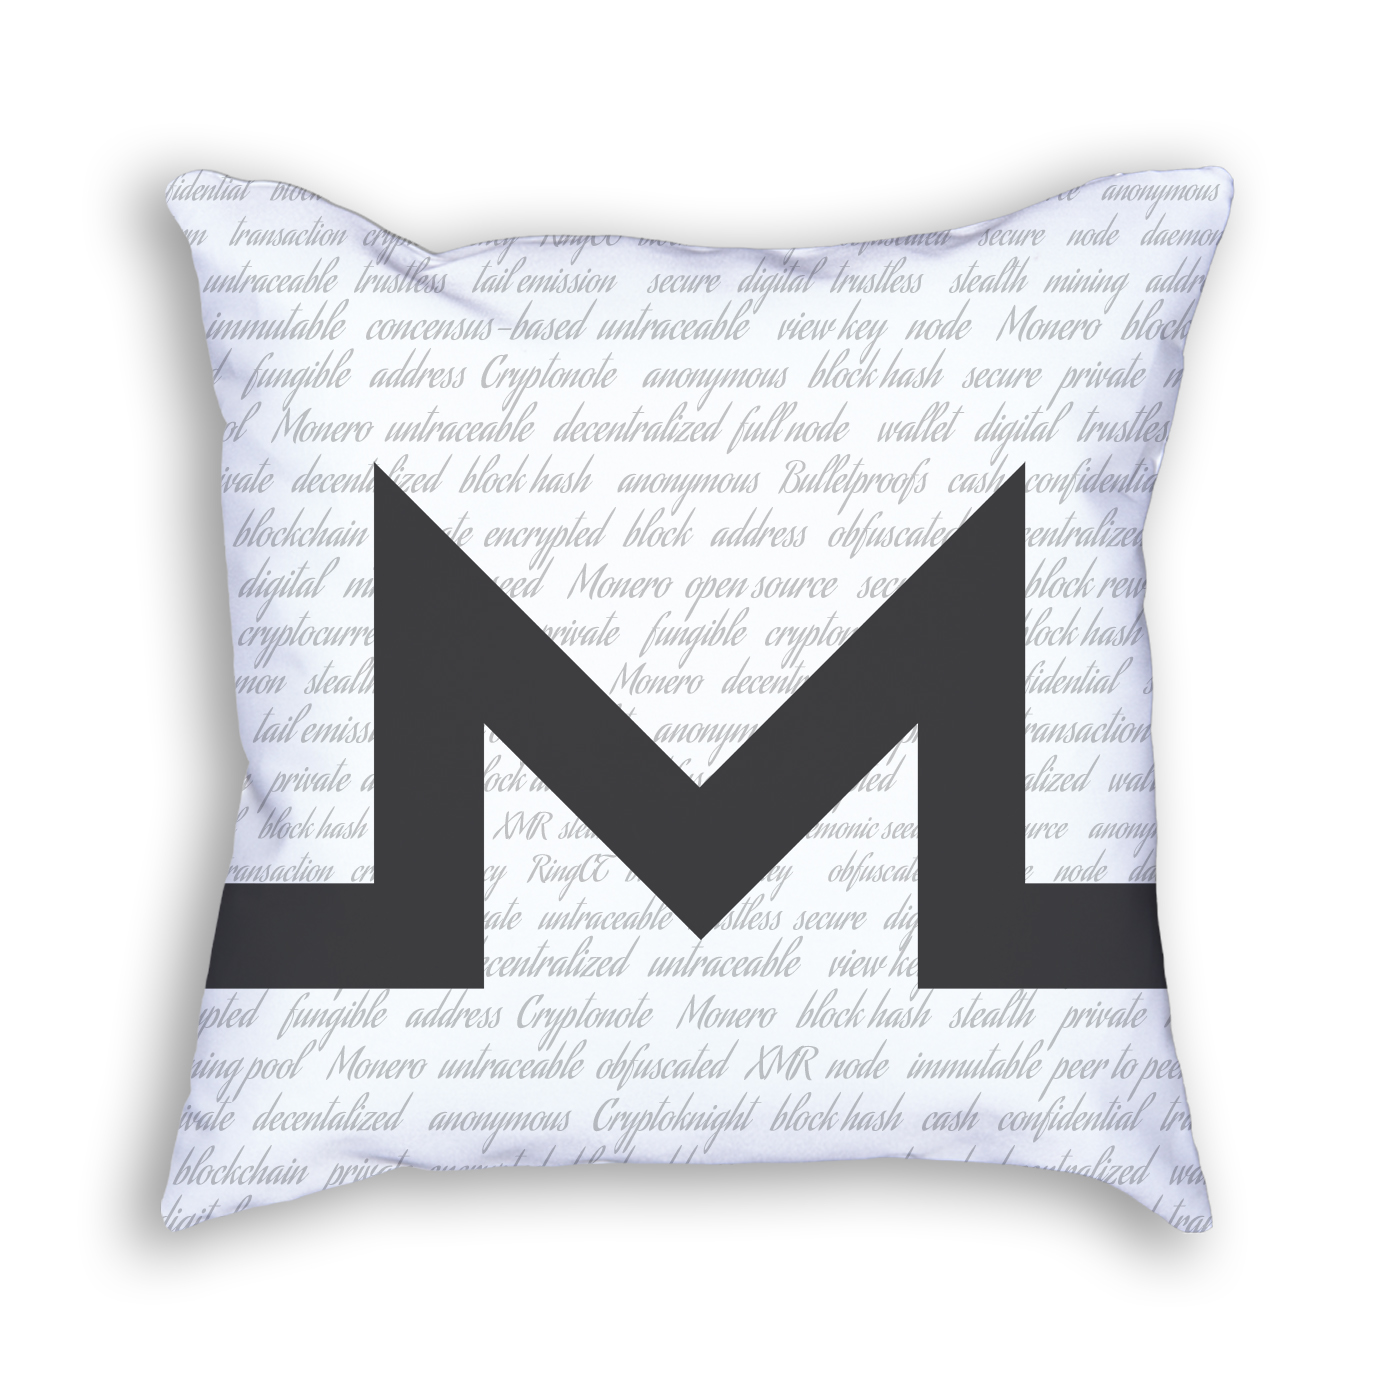 Monero Gray Pillow